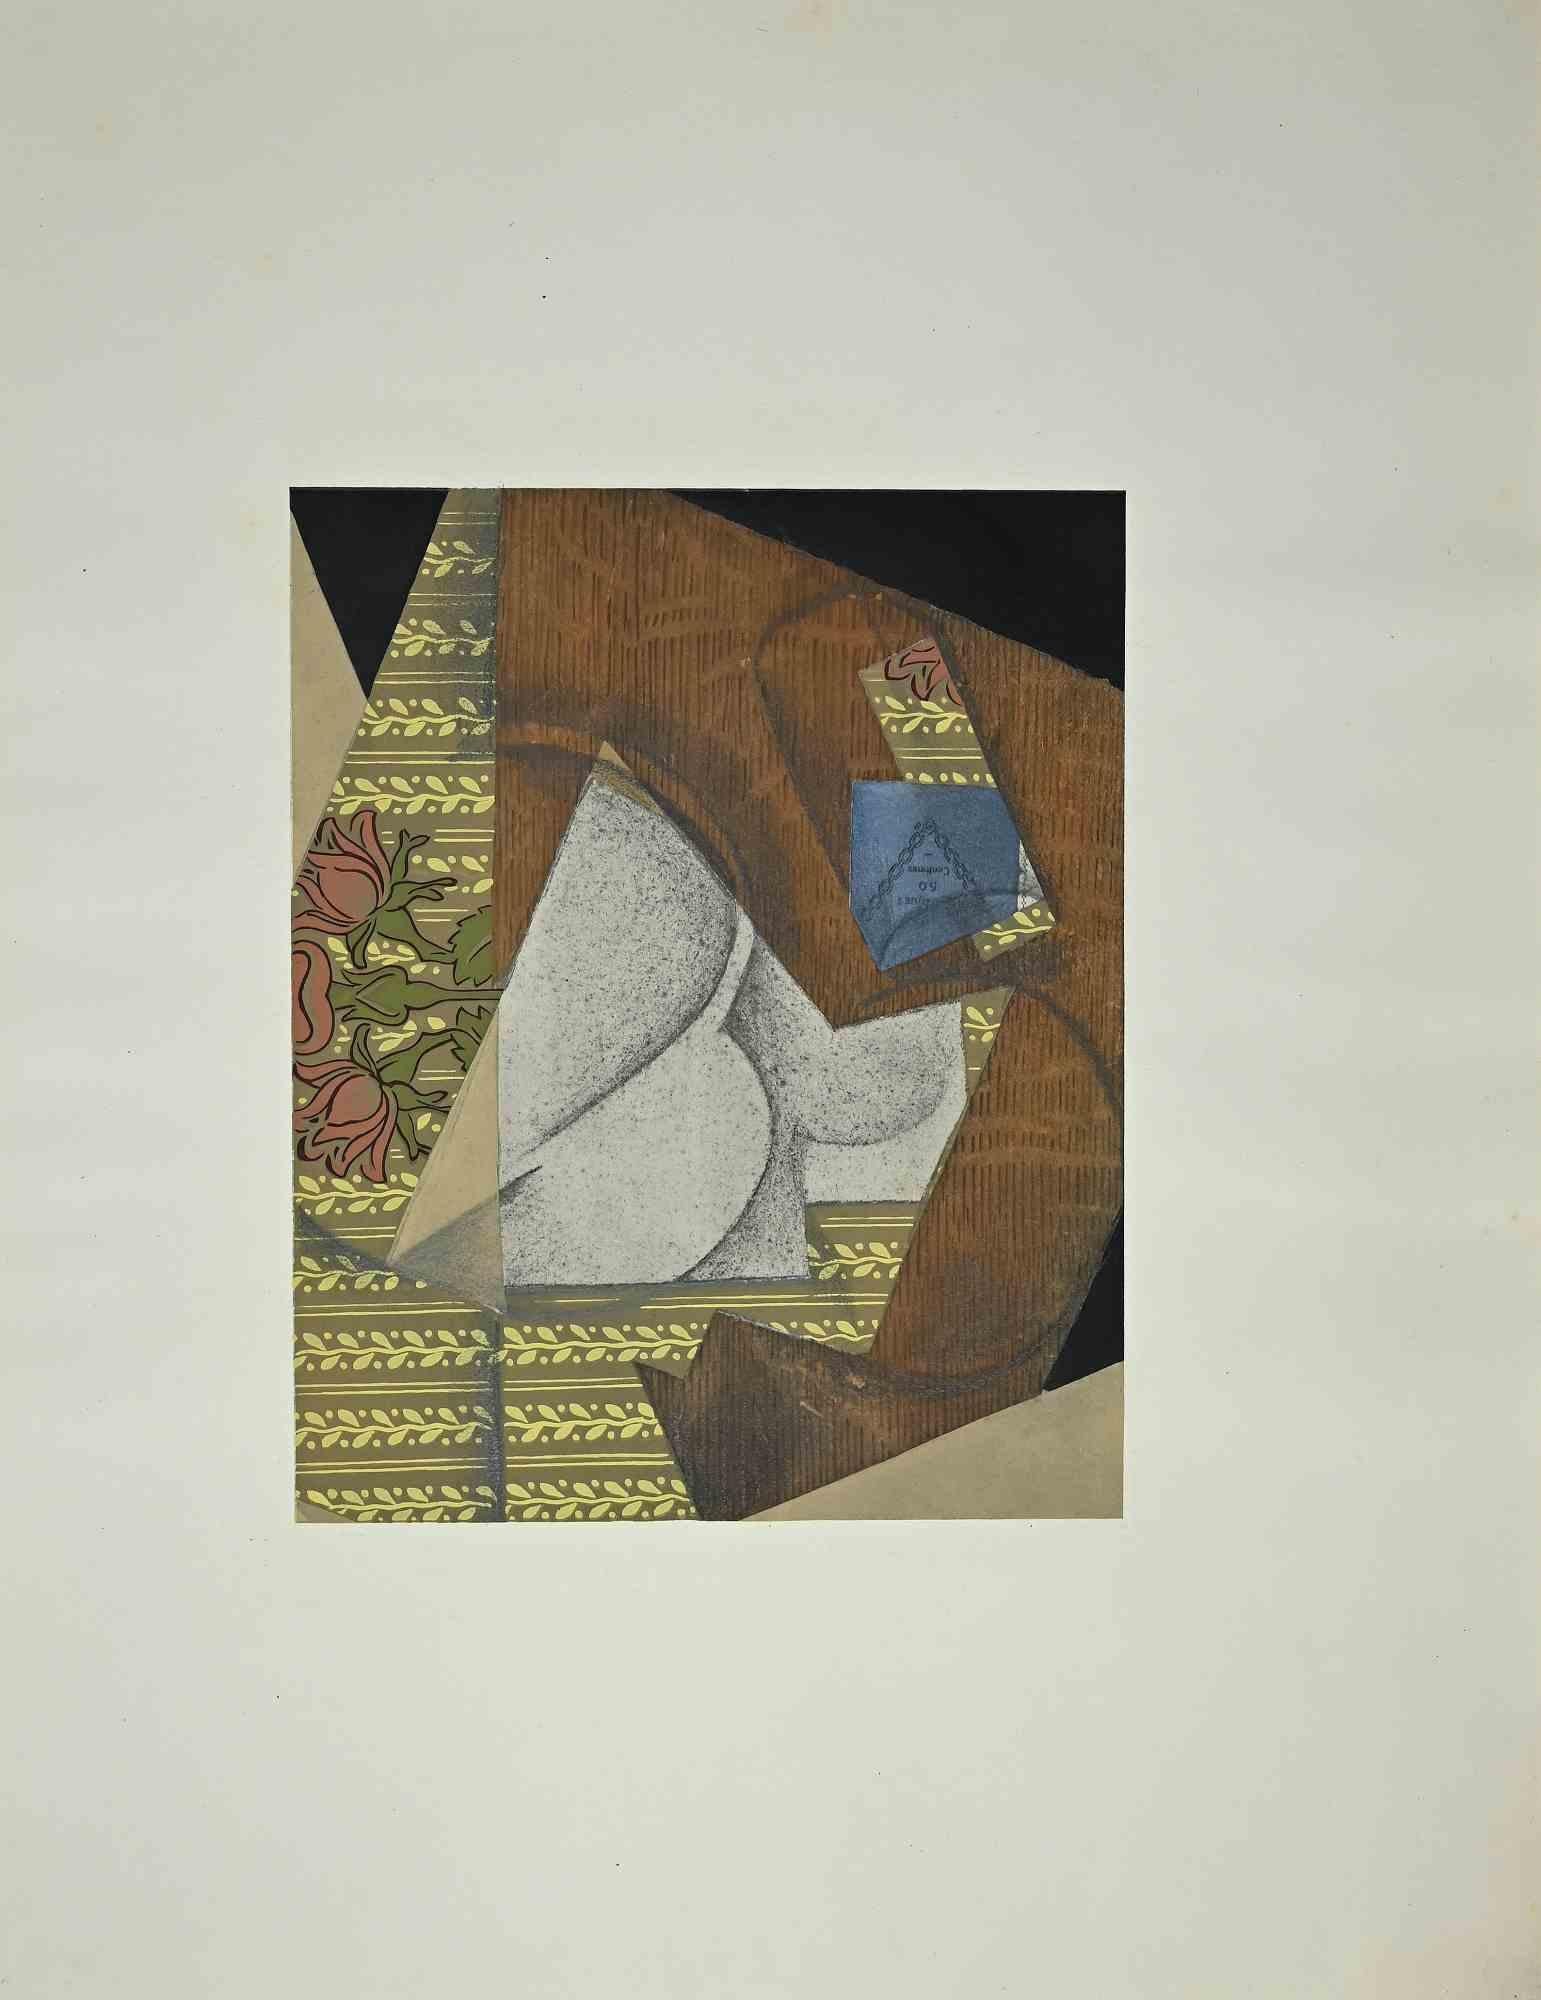 Le paquet de tabac est un collage original réalisé par Juan Gris (d'après M. Beaufuret) en 1933.

Bon état sur un papier filigrané de l'éditeur Bucher-Becker. Non signé.

Au dos, l'embossage de l'éditeur.

Passpartout en carton crème coloré (40x52